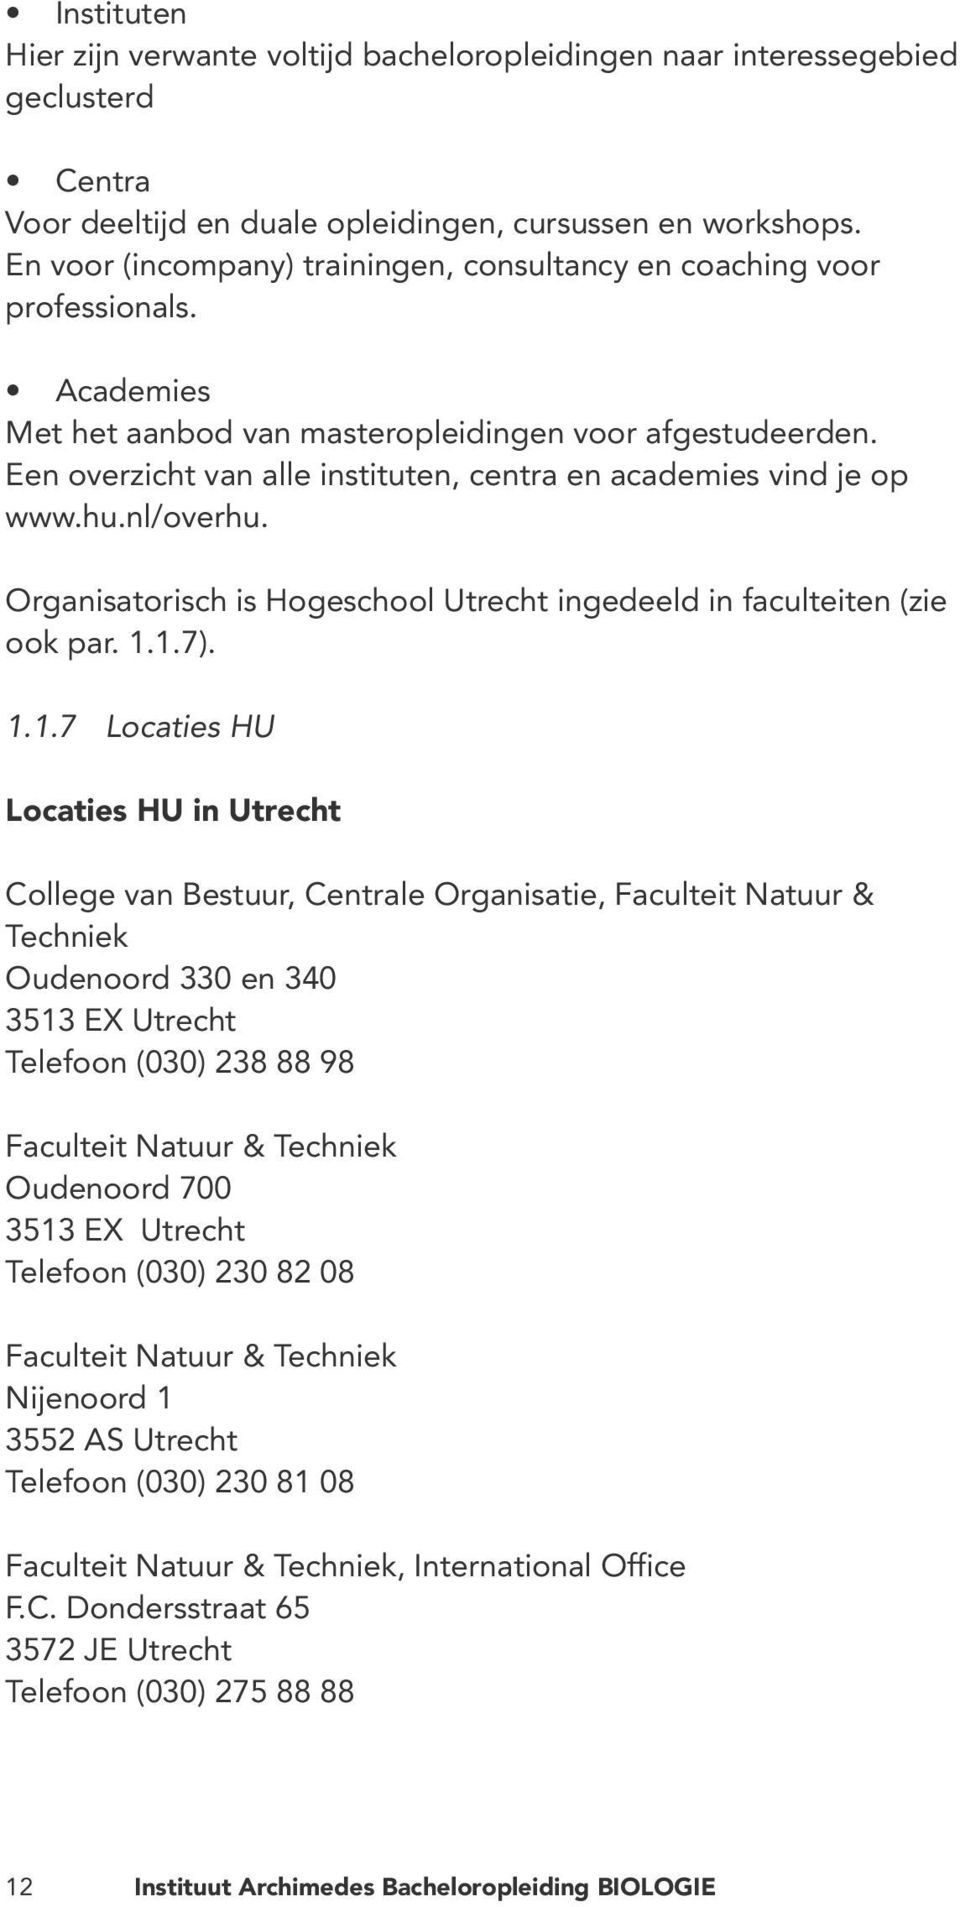 Een overzicht van alle instituten, centra en academies vind je op www.hu.nl/overhu. Organisatorisch is Hogeschool Utrecht ingedeeld in faculteiten (zie ook par. 1.